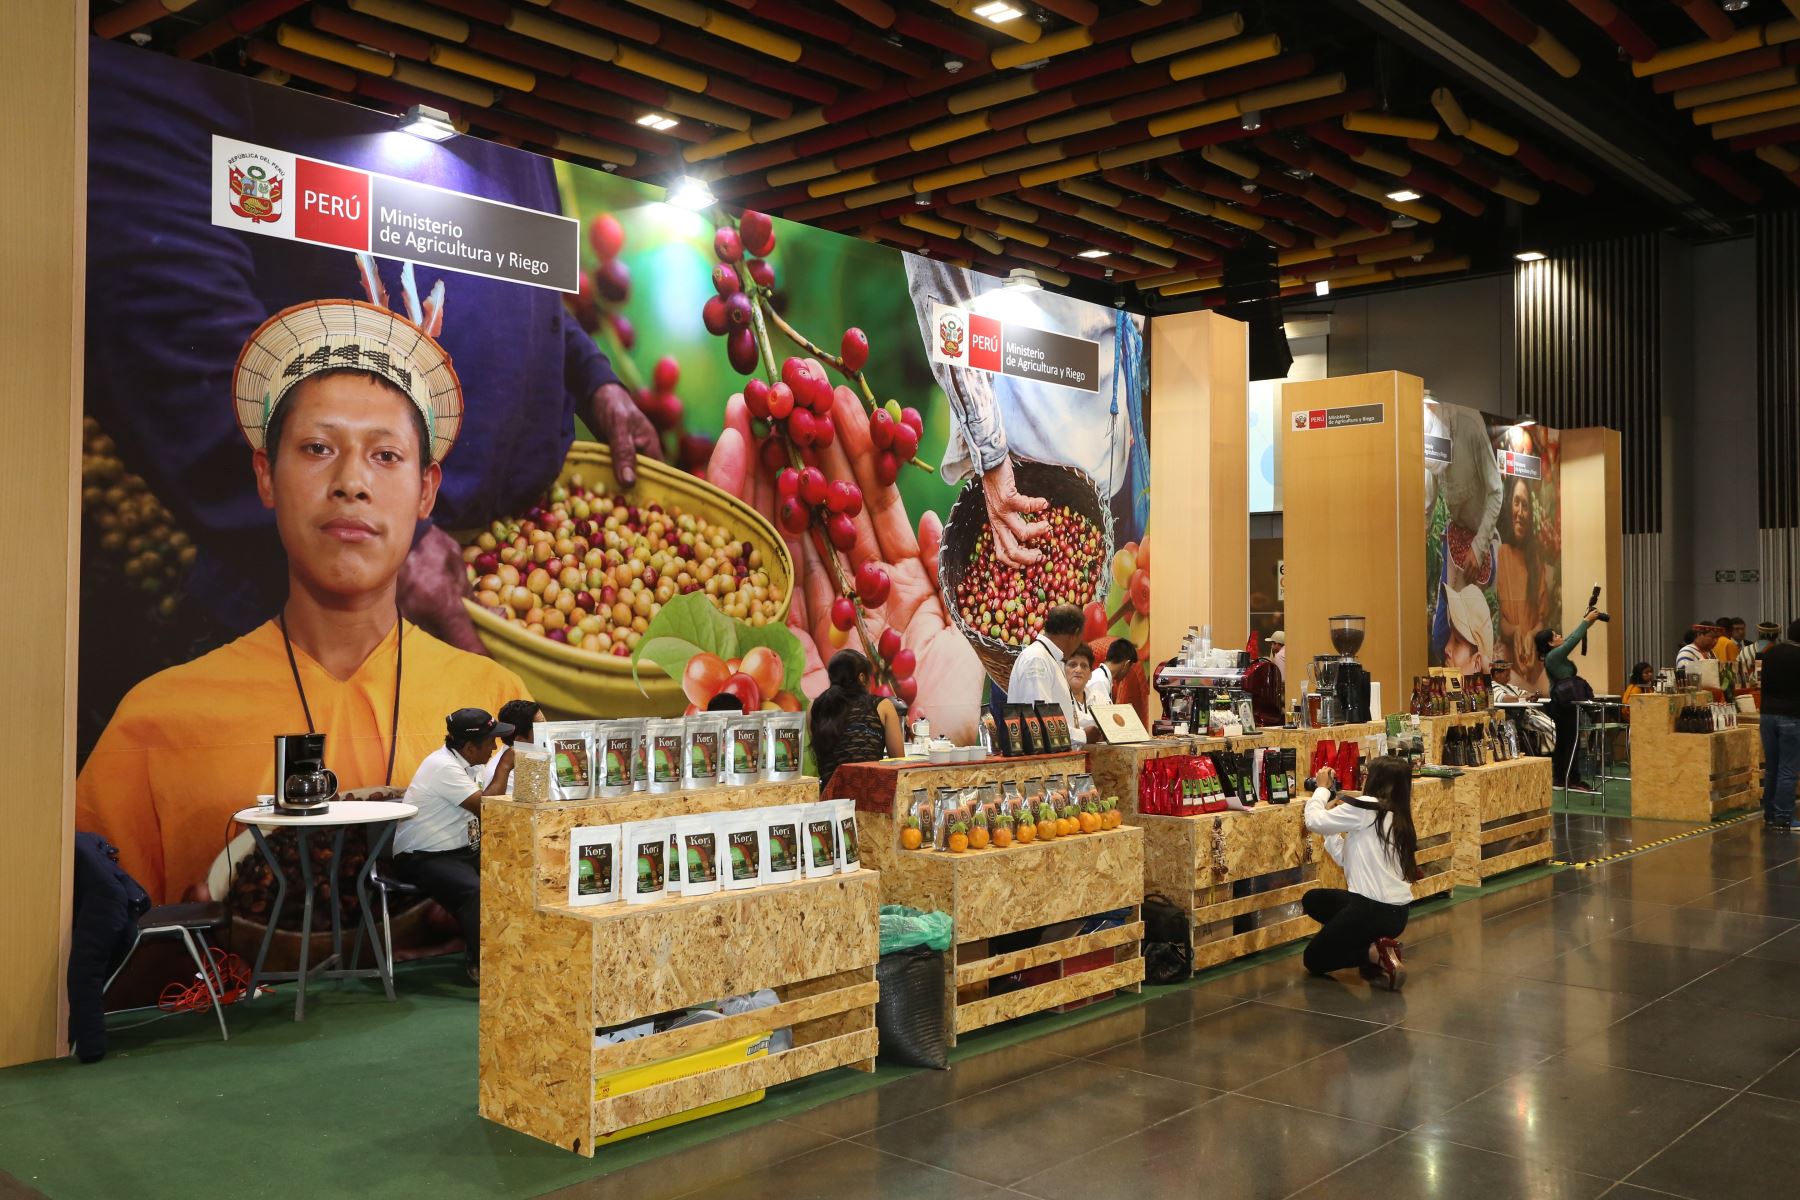 Cultivo del café  da trabajo a 223,000 familias de pequeños productores